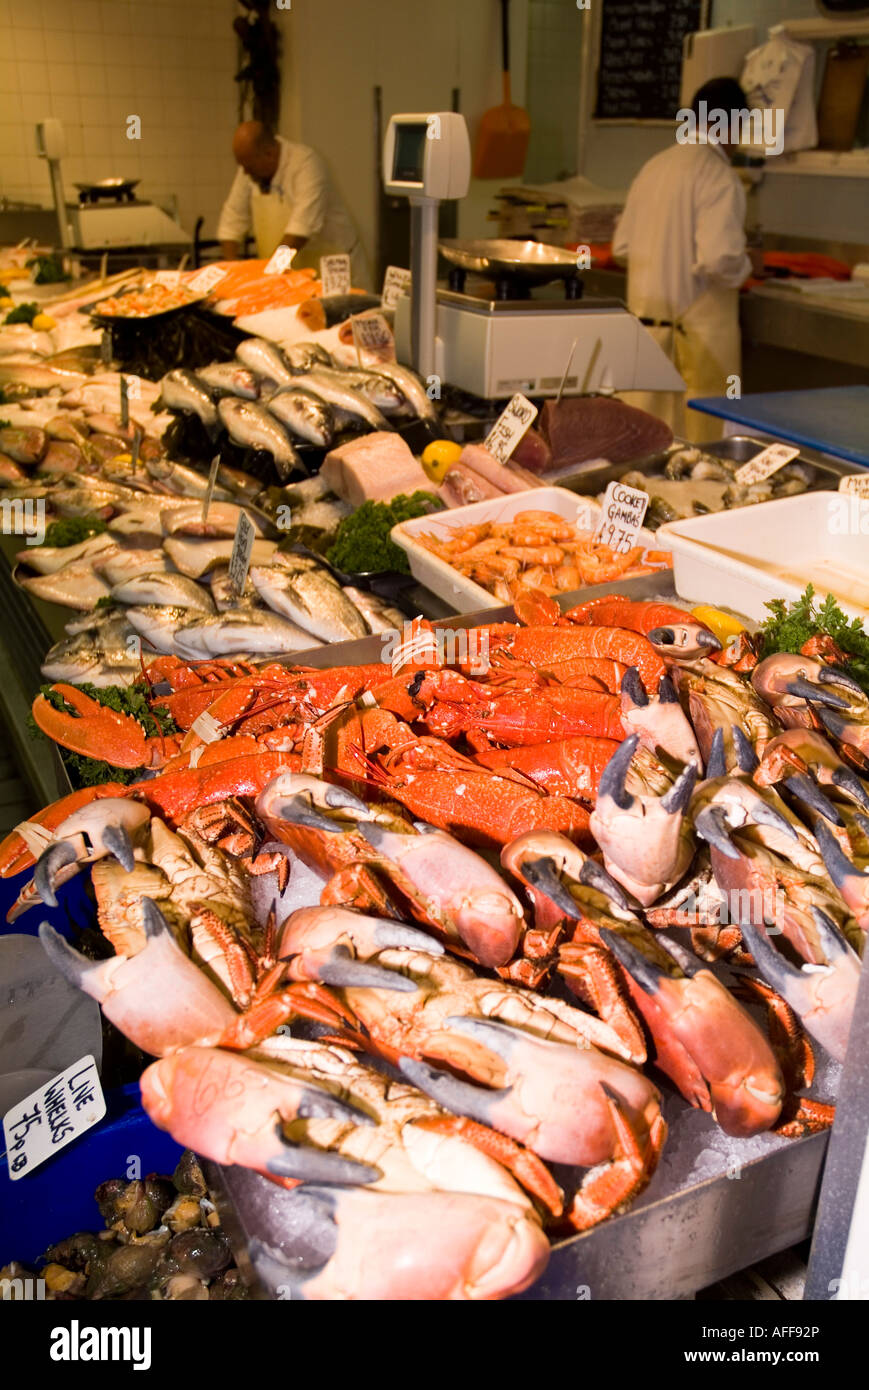 dh mercato del pesce ST HELIER JERSEY Isole del canale mercato interno pescherie pesce stalla granchi aragoste isola cibo Foto Stock